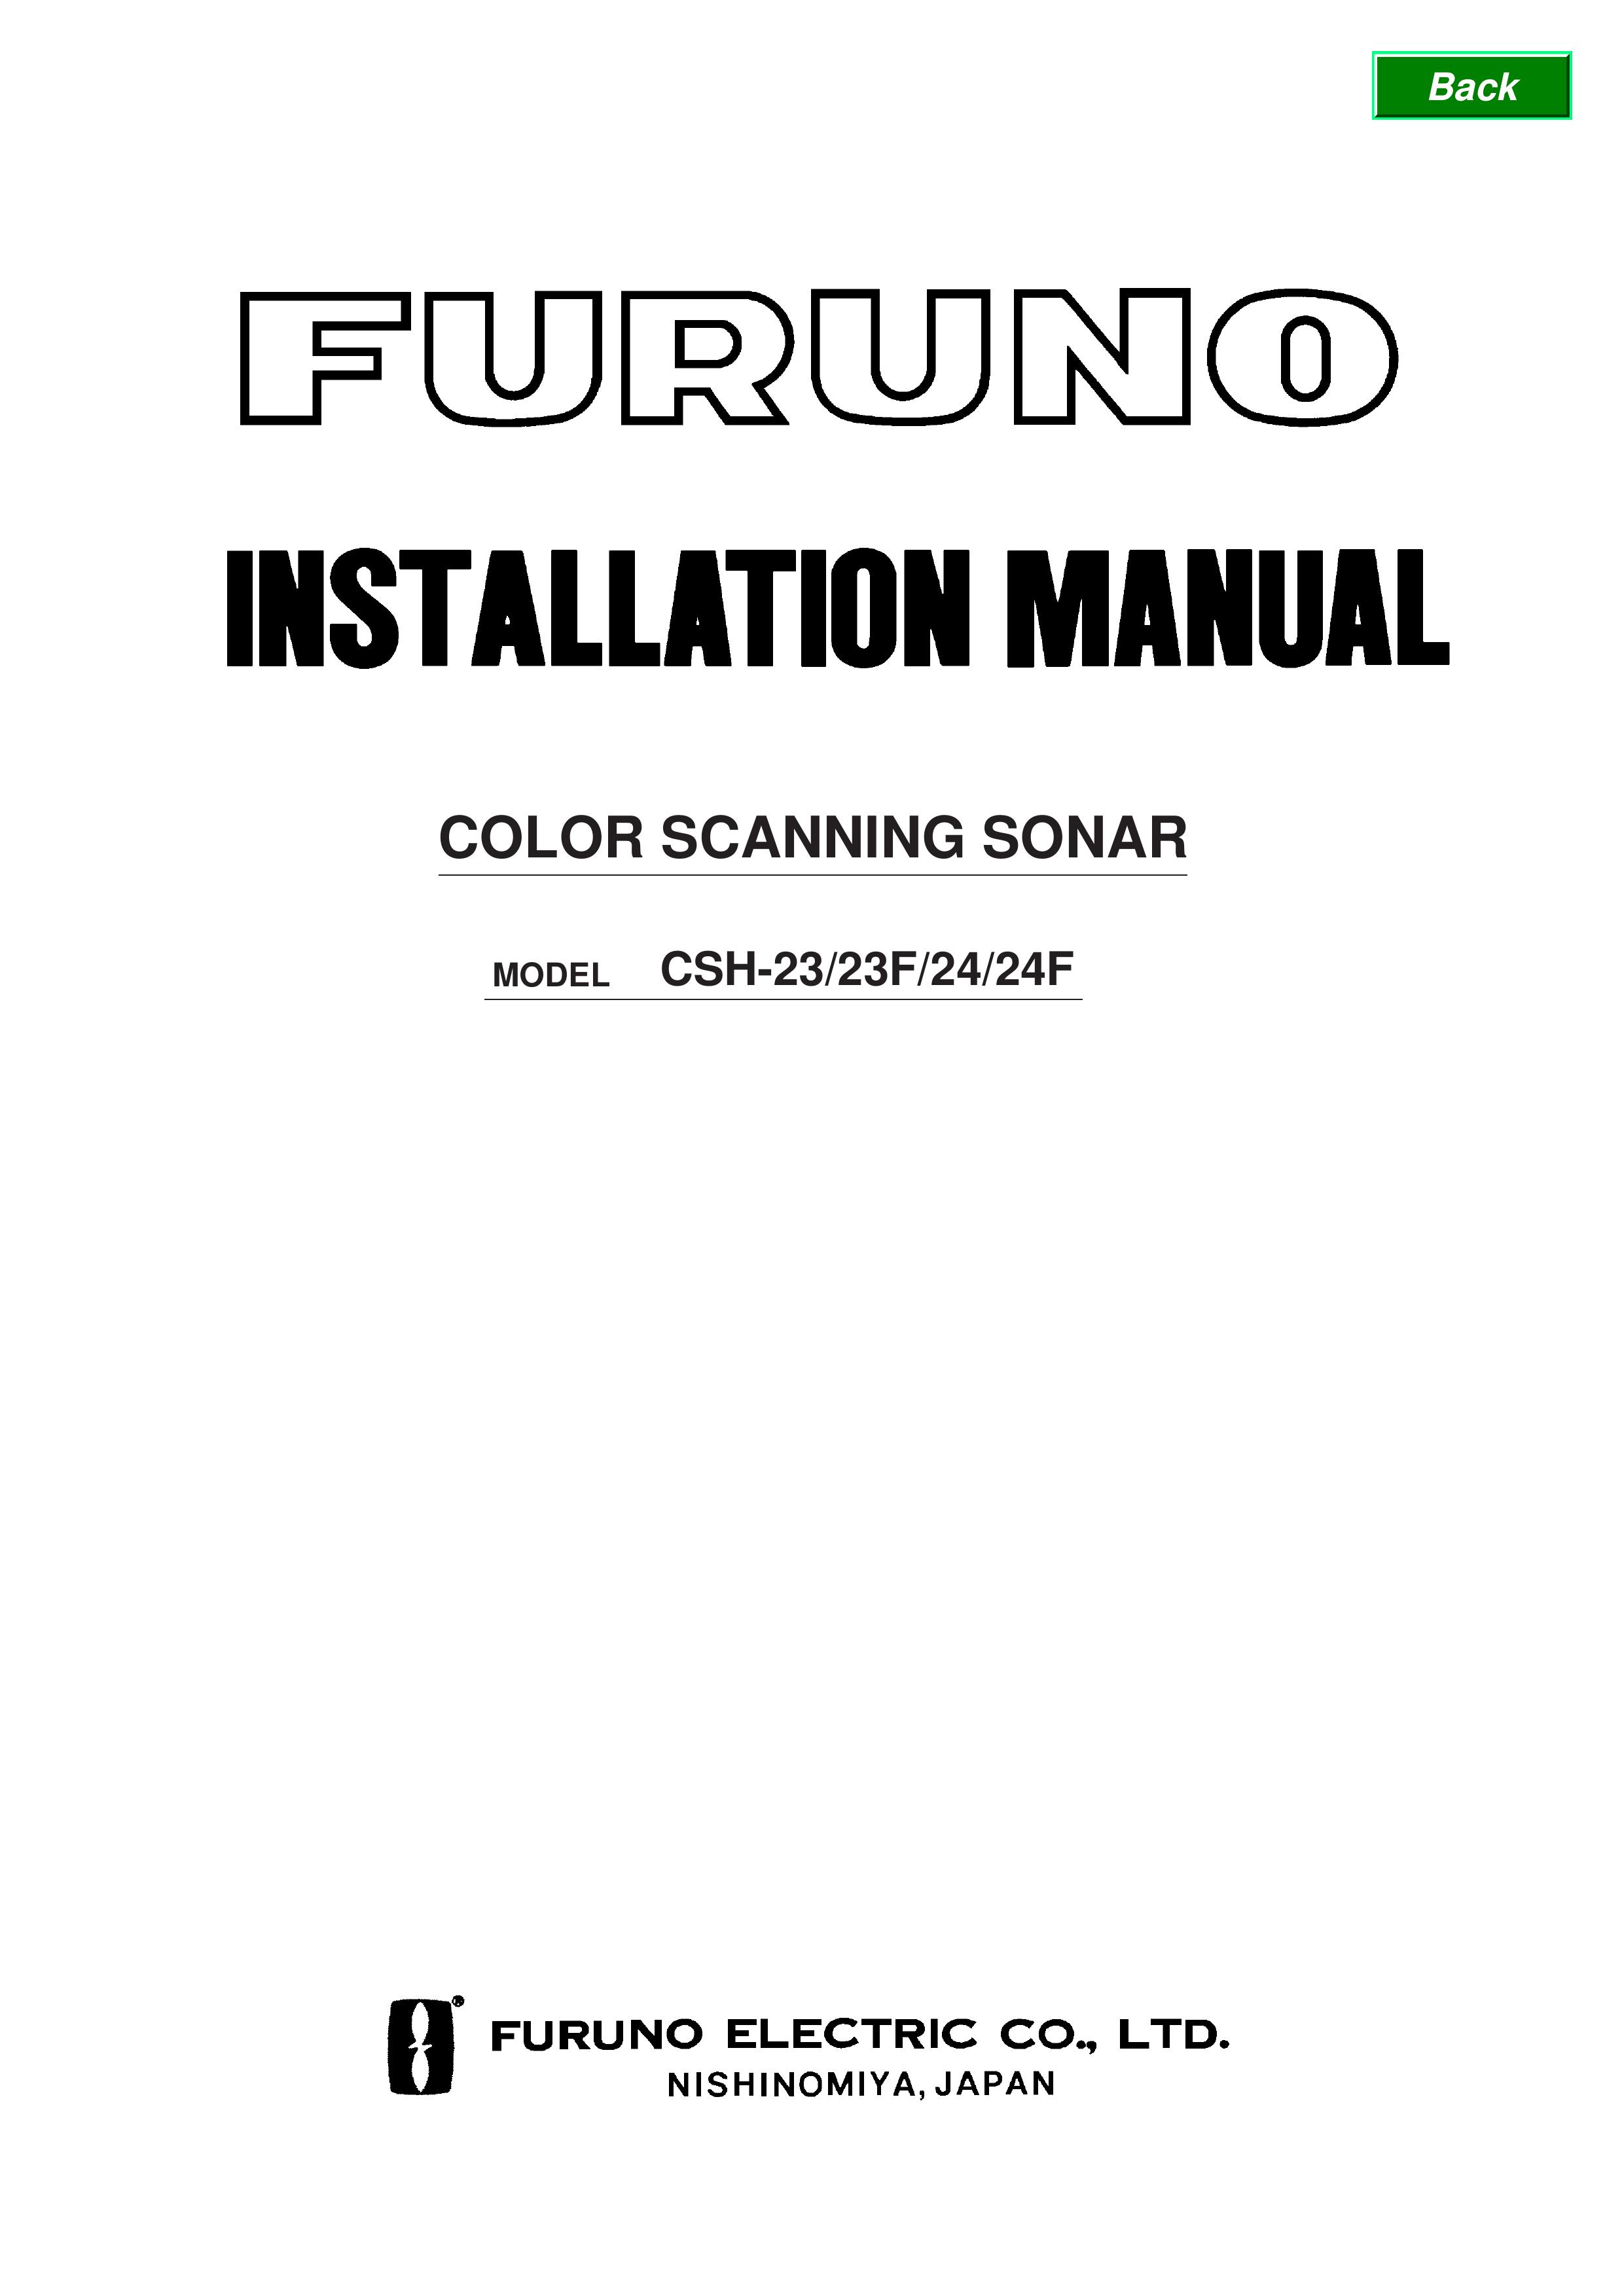 Furuno CSH-24F SONAR User Manual